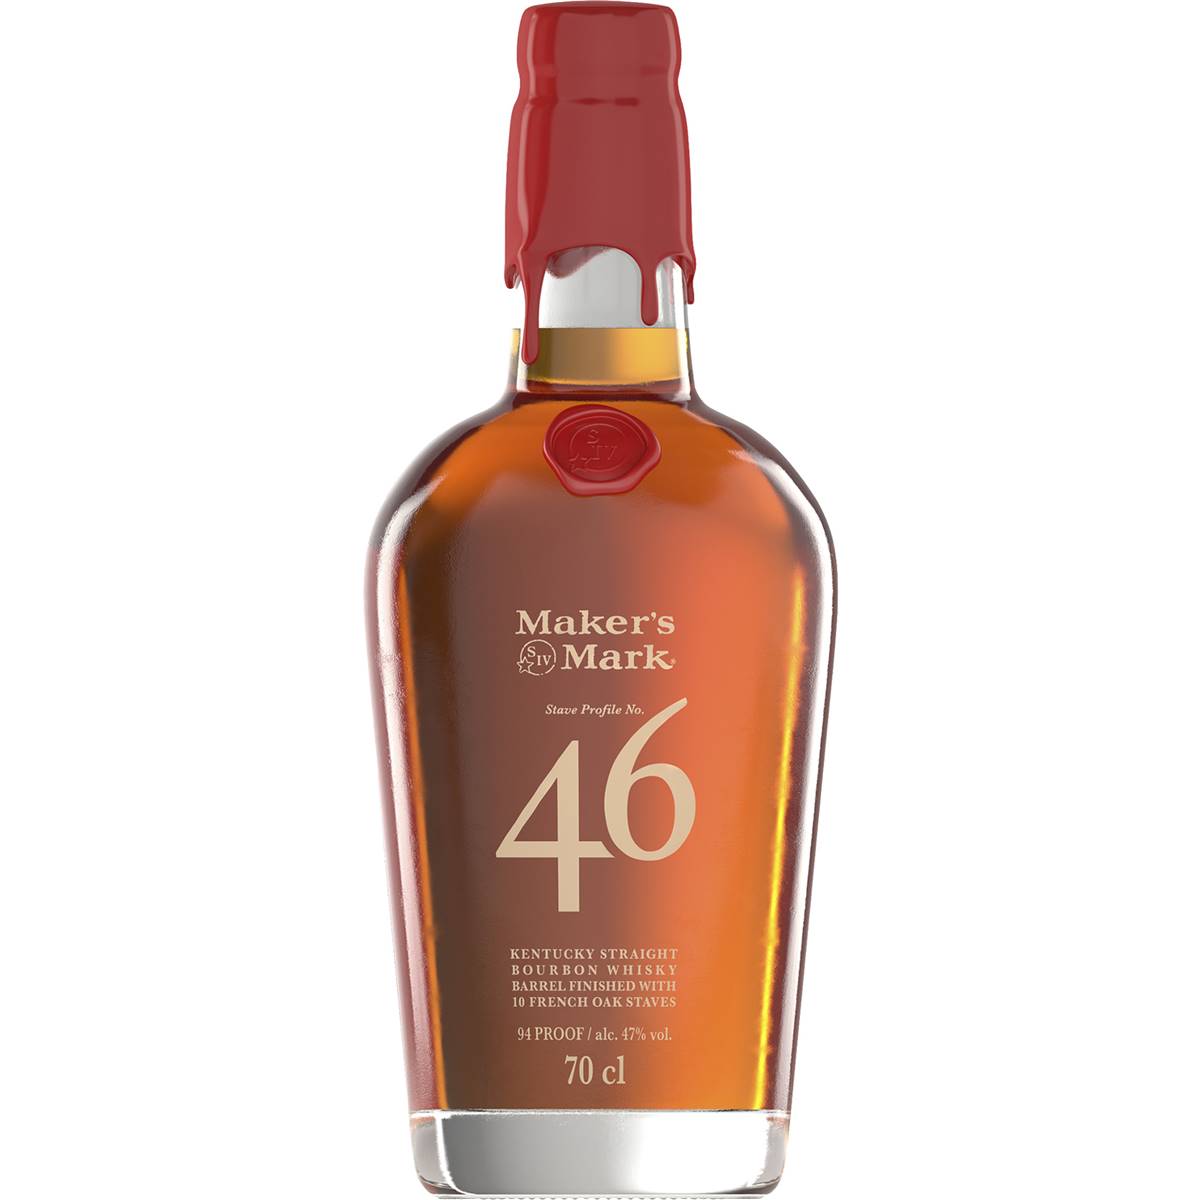 Calories in Maker's Mark 46 Kentucky Bourbon